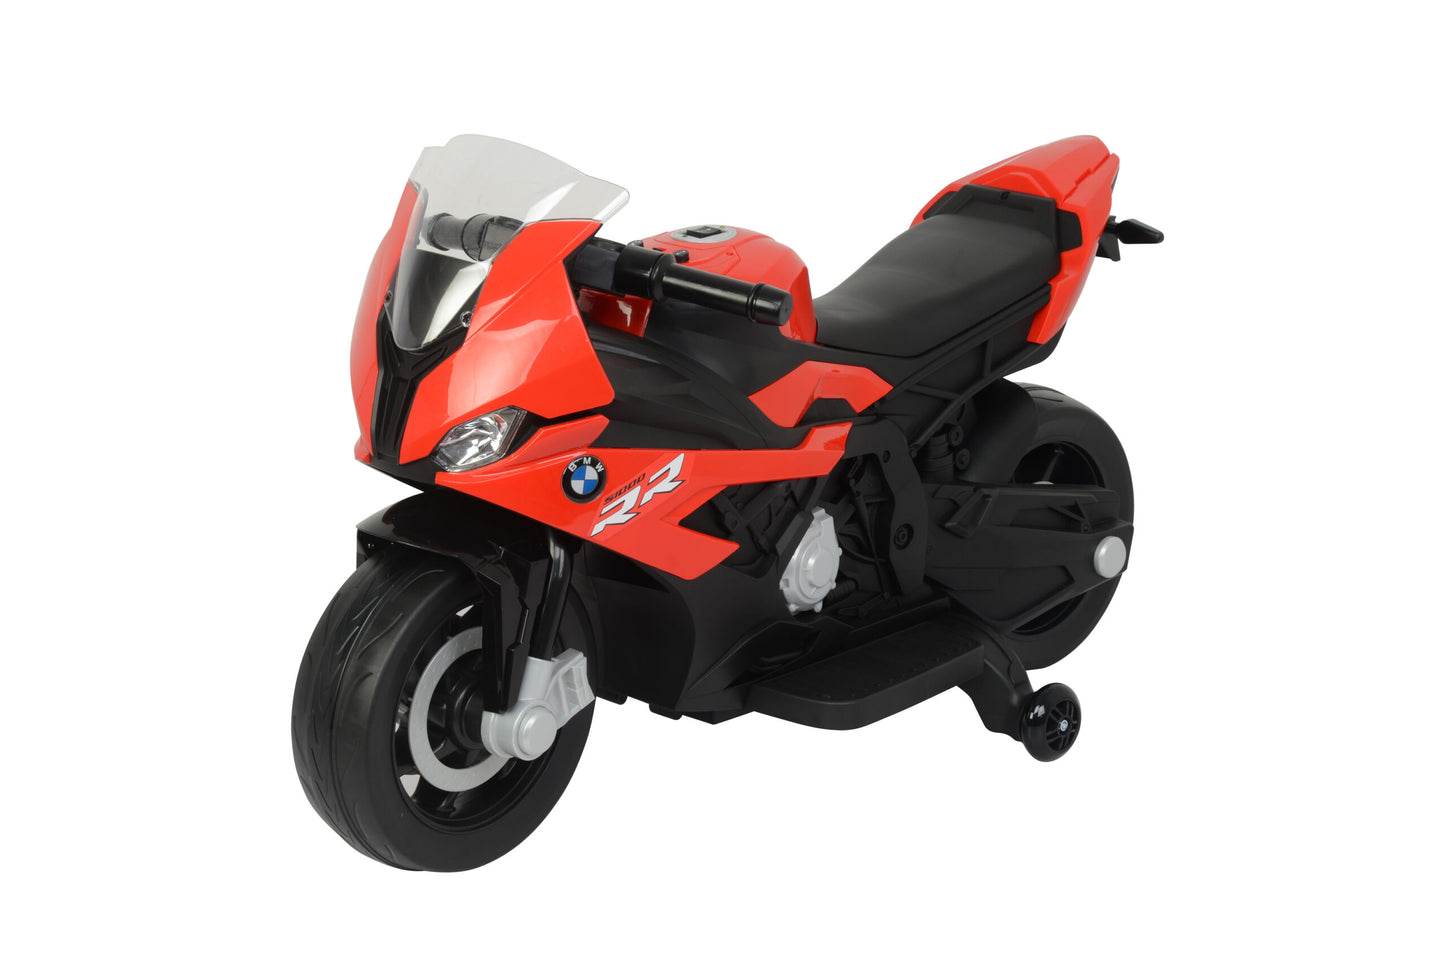 redbmw-motorcyclebike1